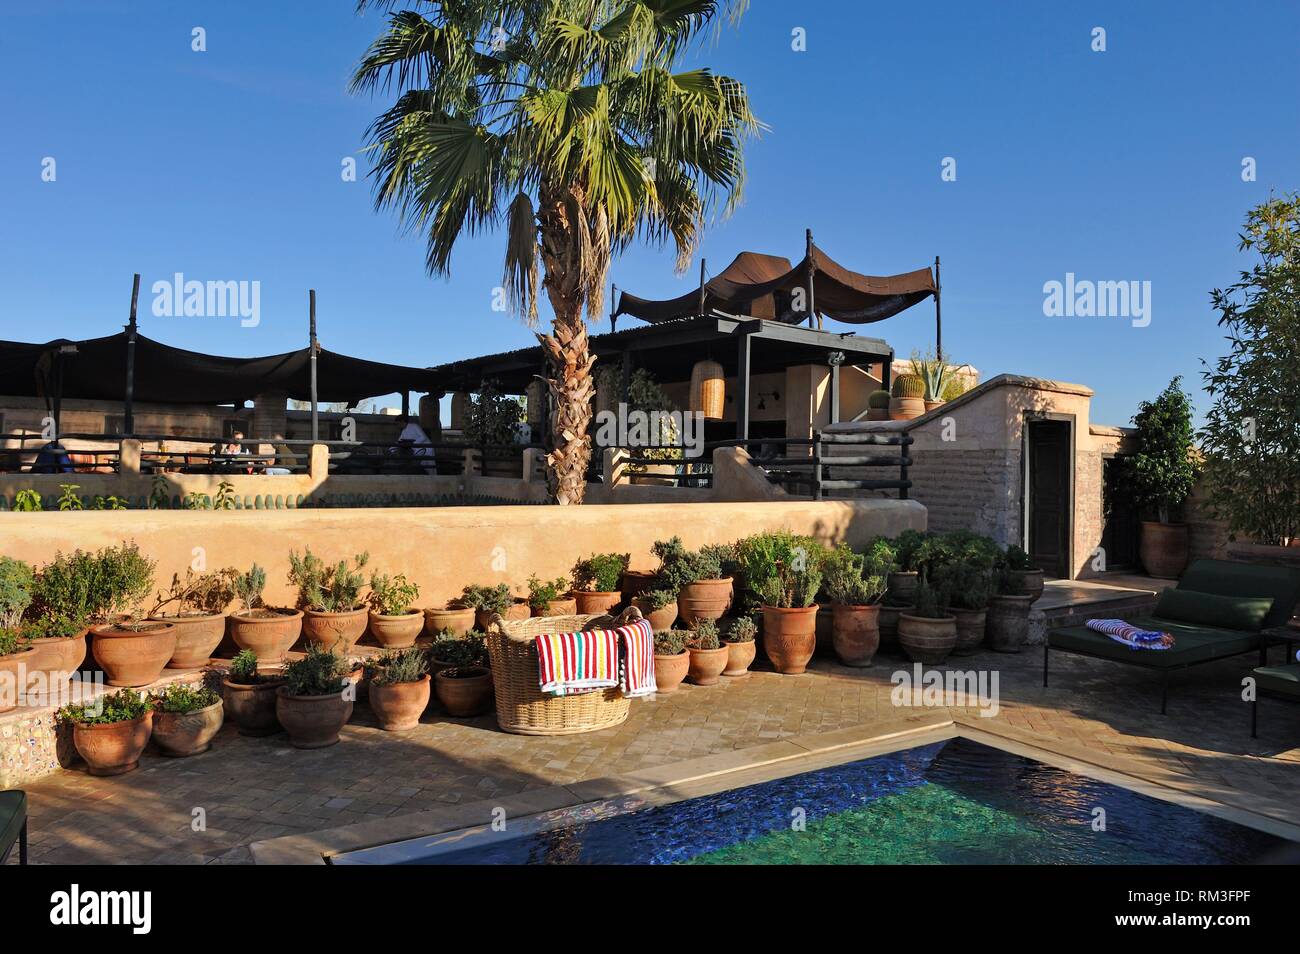 Piscina en una de las terrazas de la azotea en El-Fenn hotel, Marrakech, Marruecos, el Norte de África. Foto de stock